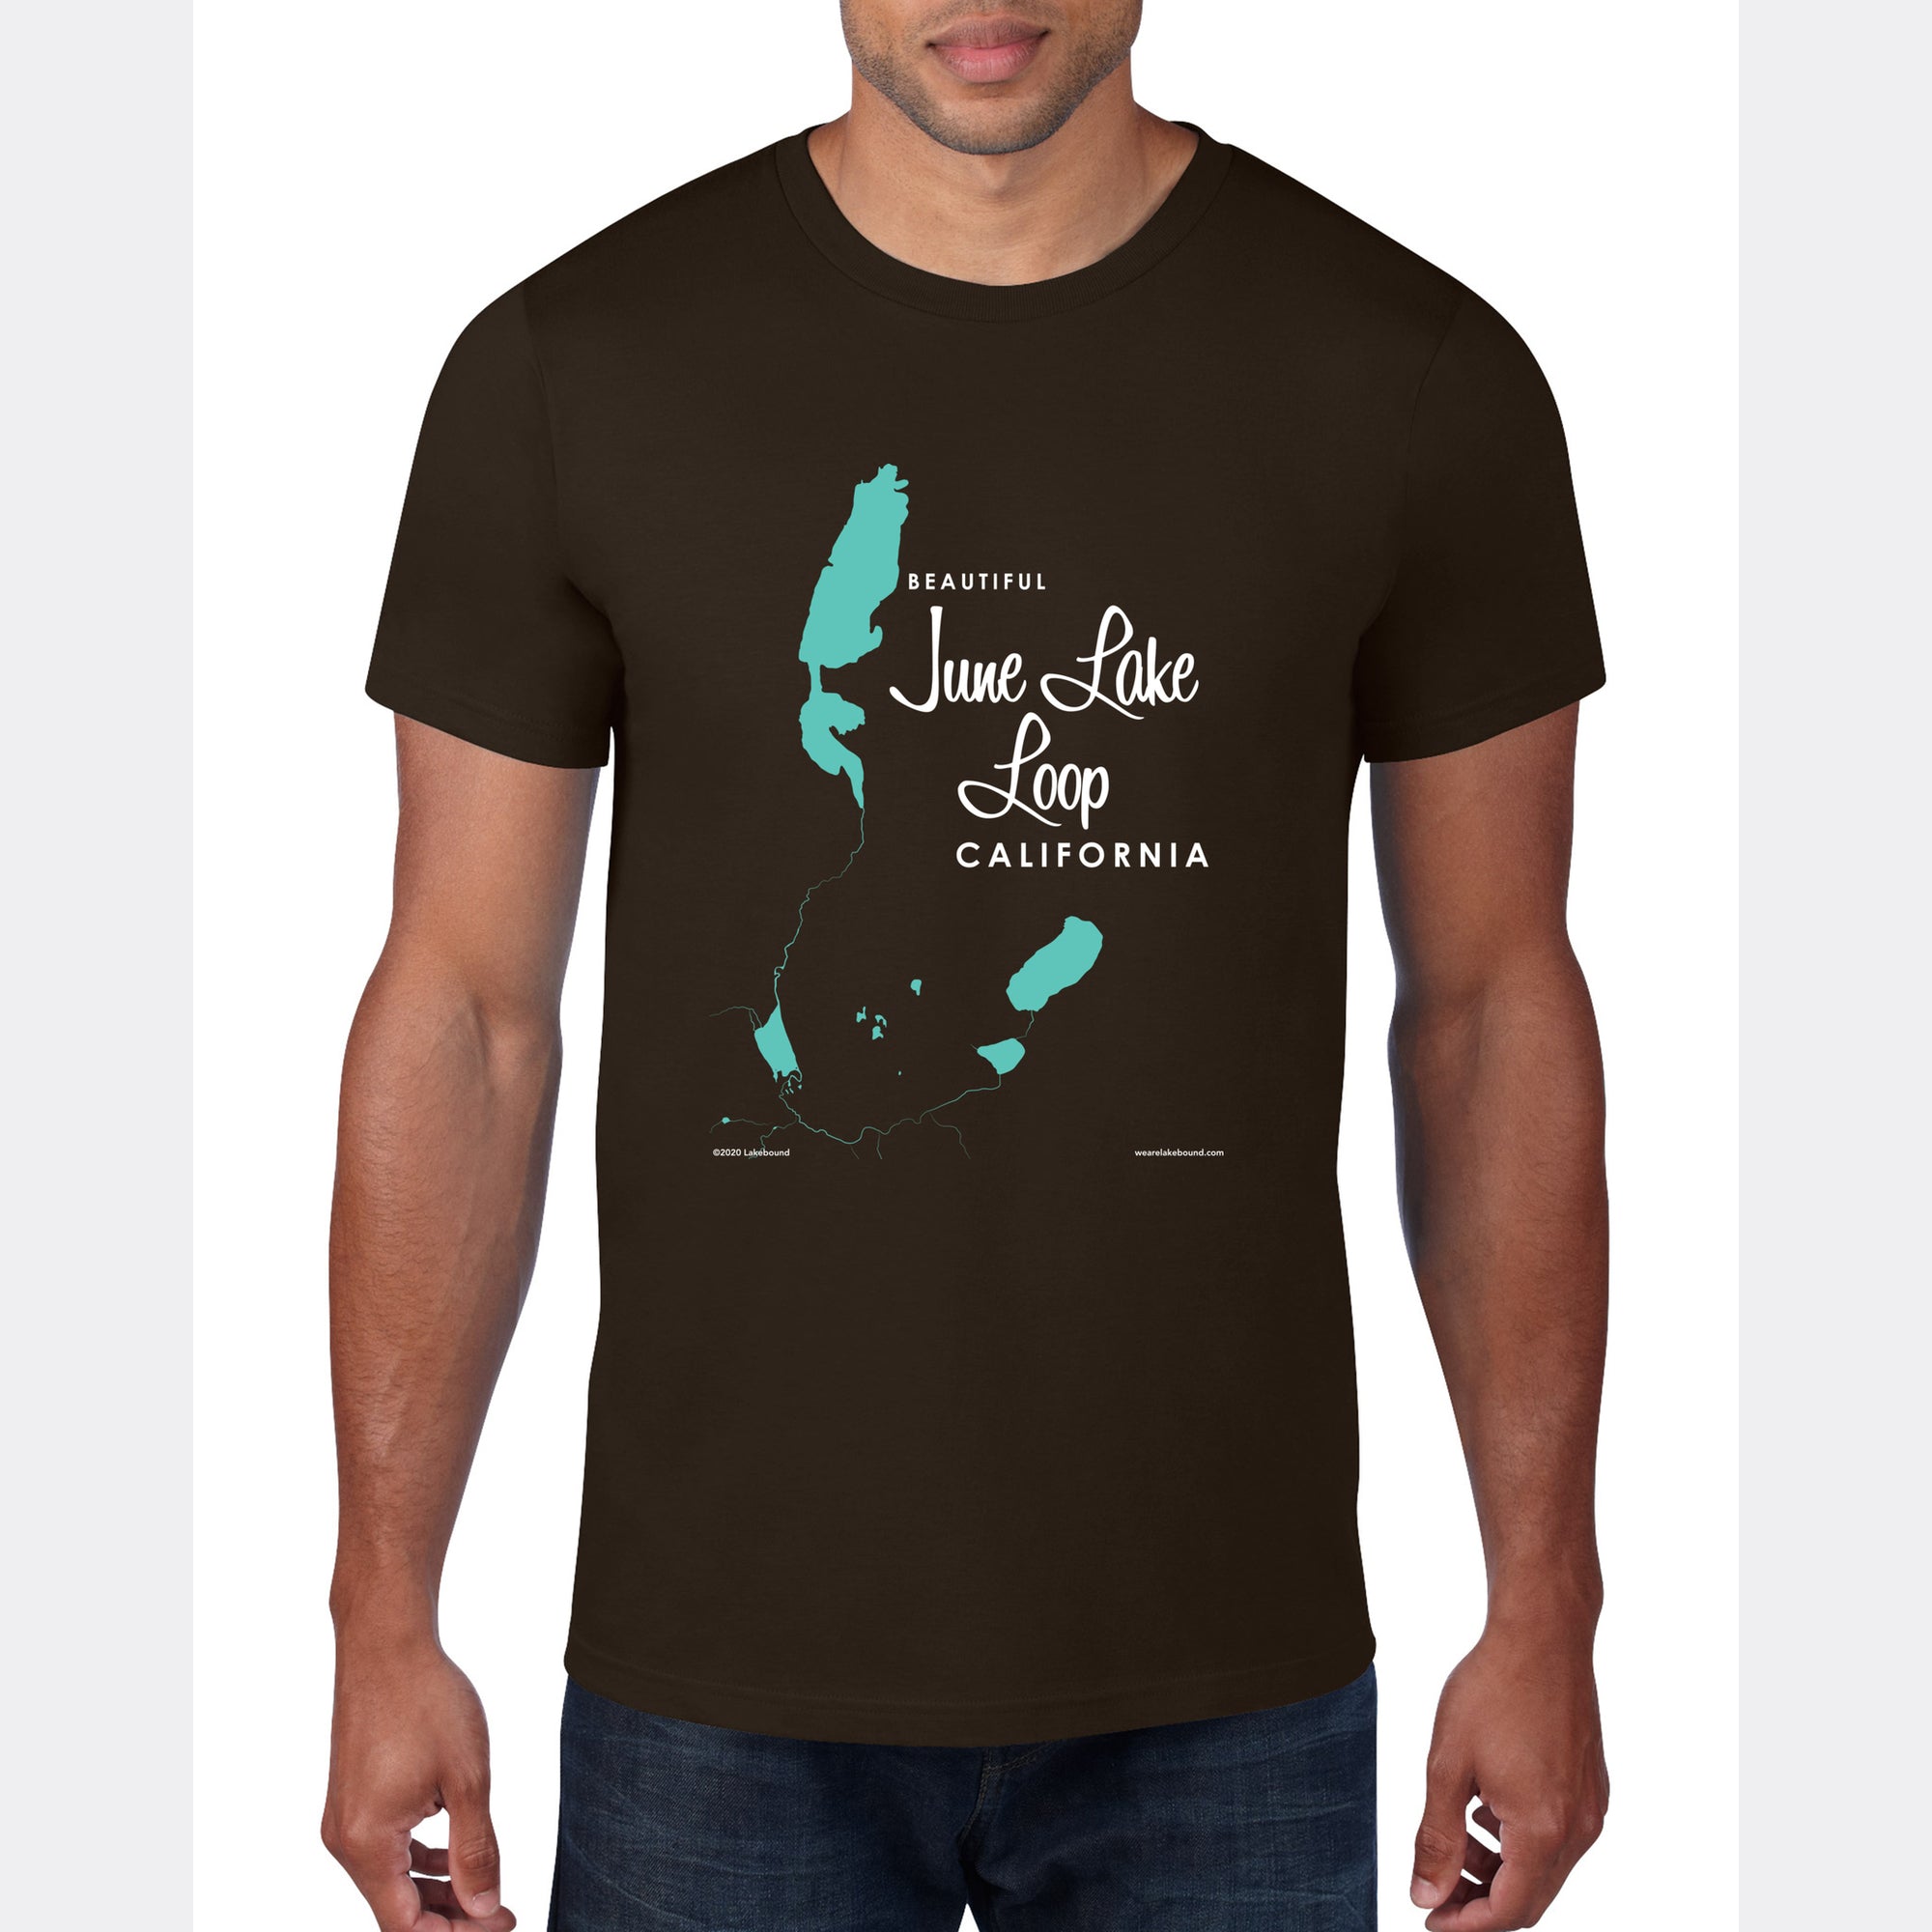 June Lake Loop California, T-Shirt